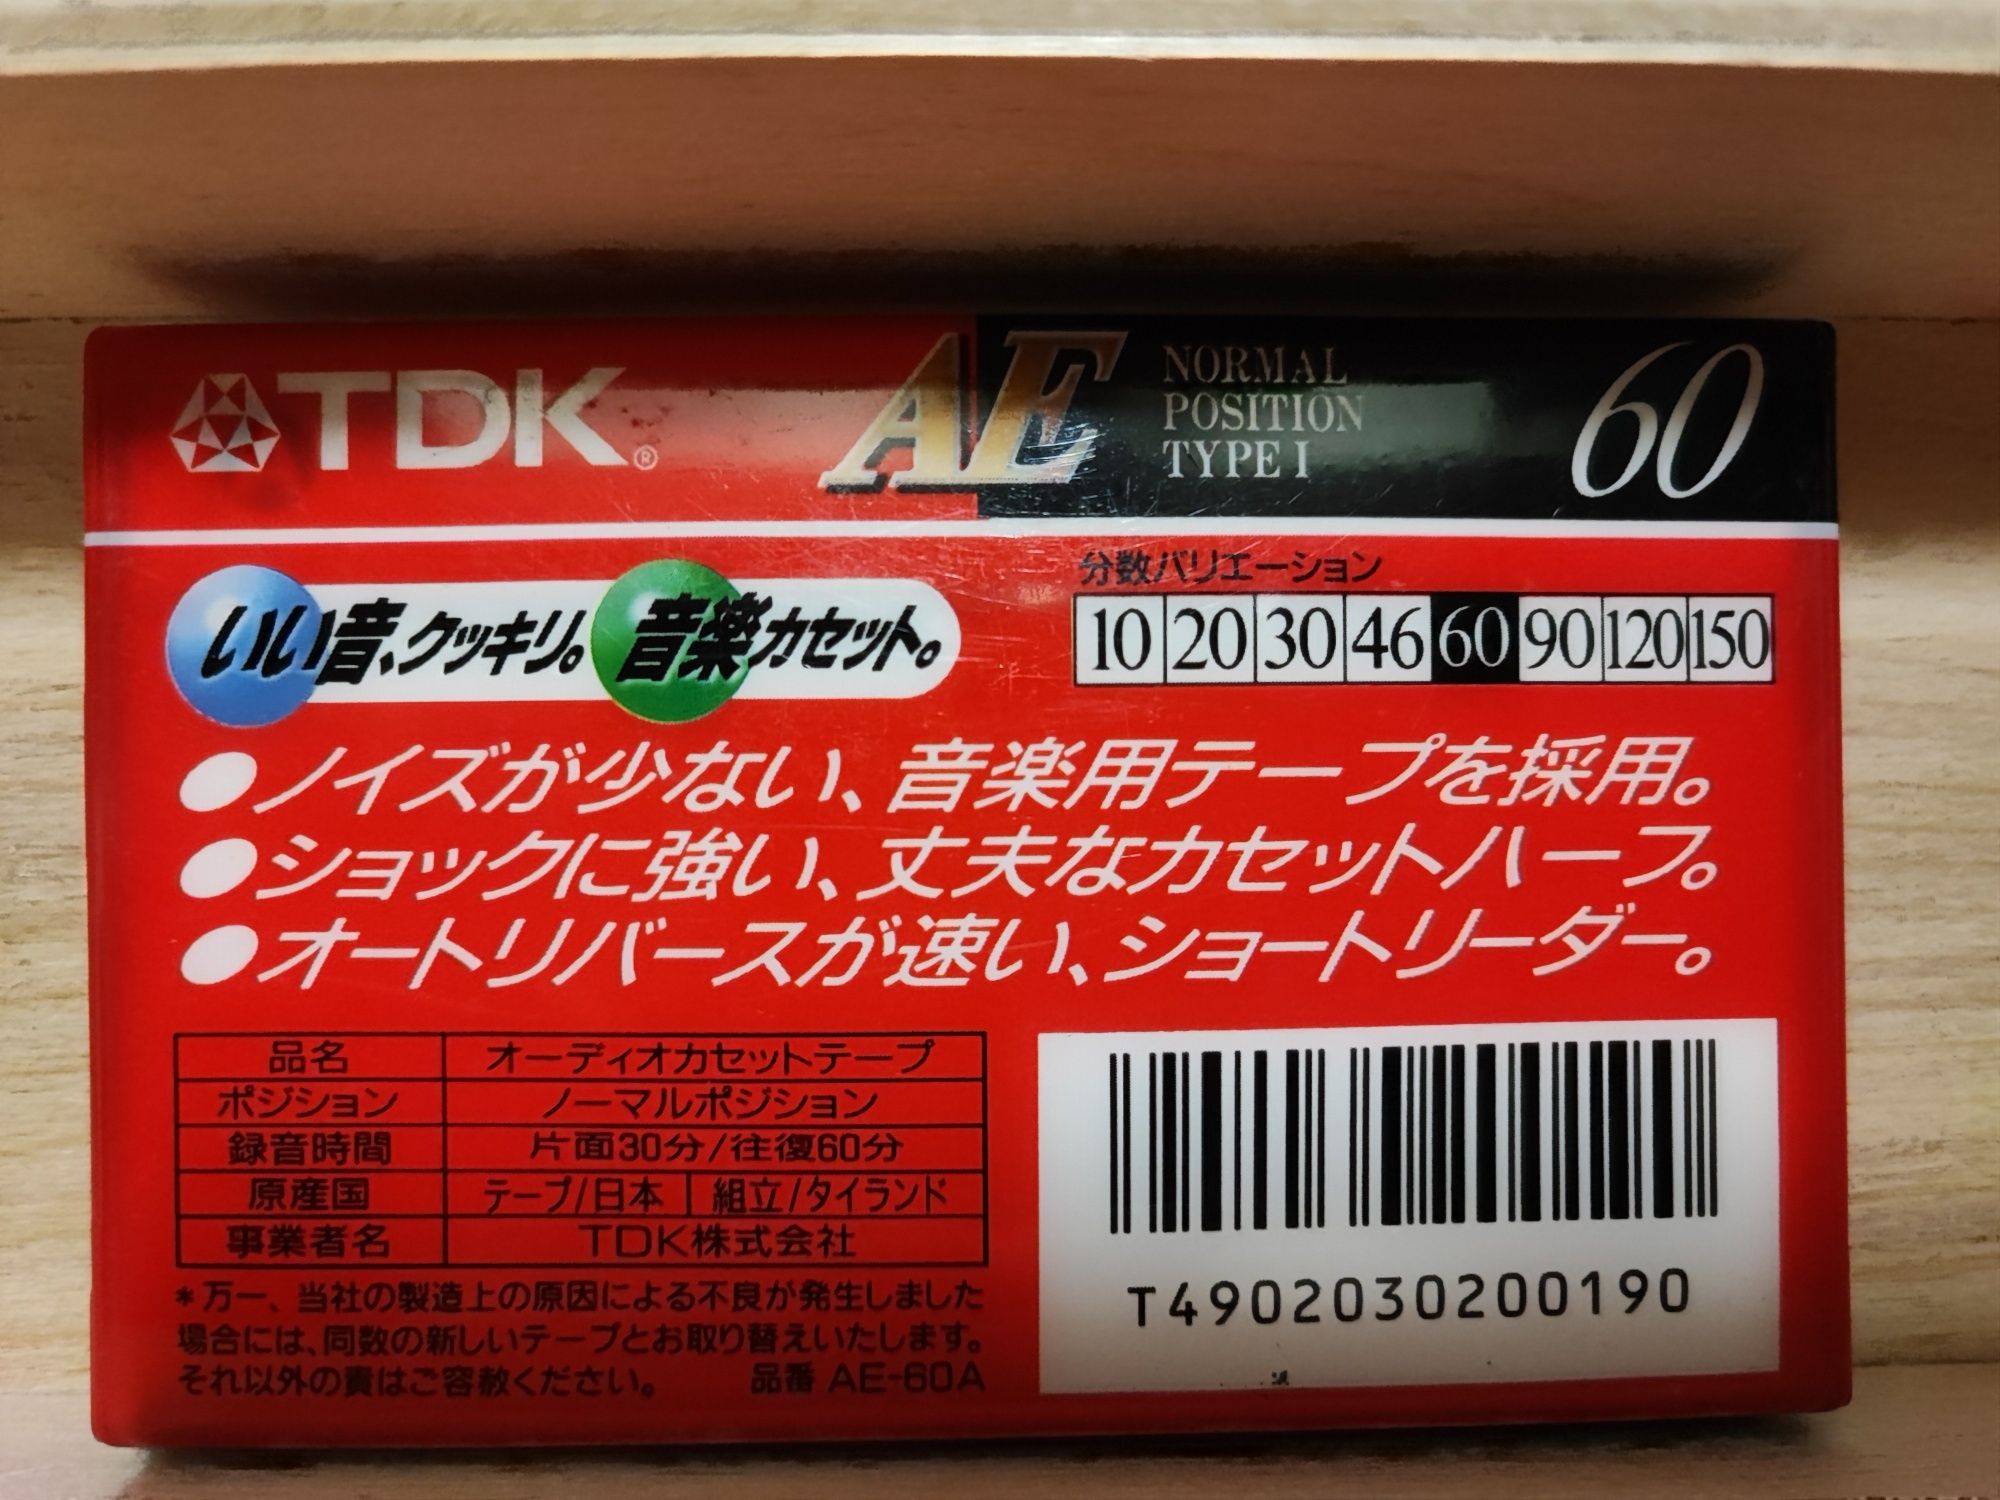 Cassette TDK AE C60